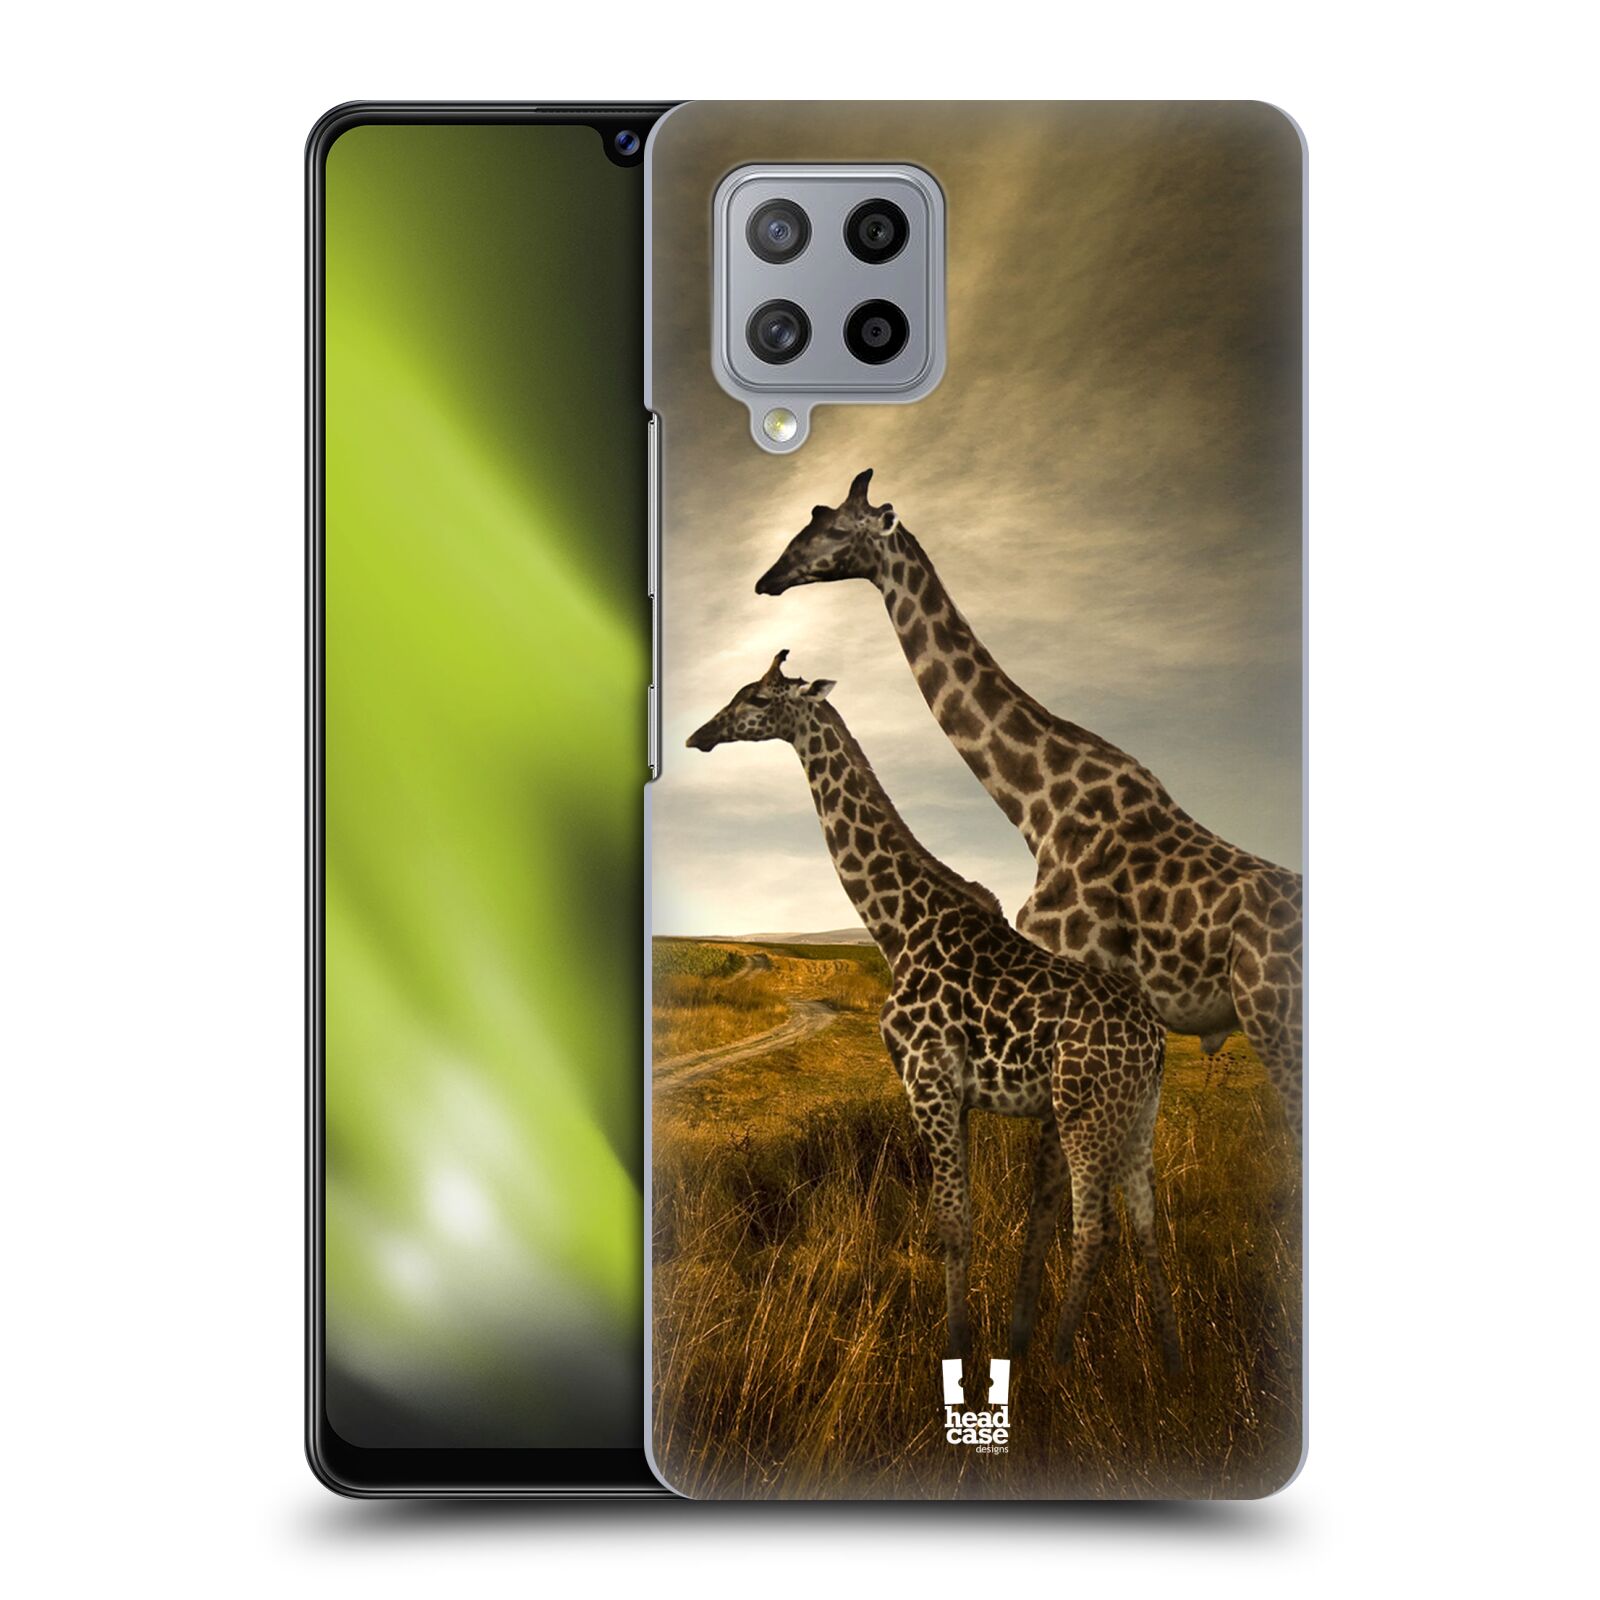 Zadní obal pro mobil Samsung Galaxy A42 5G - HEAD CASE - Svět zvířat žirafy